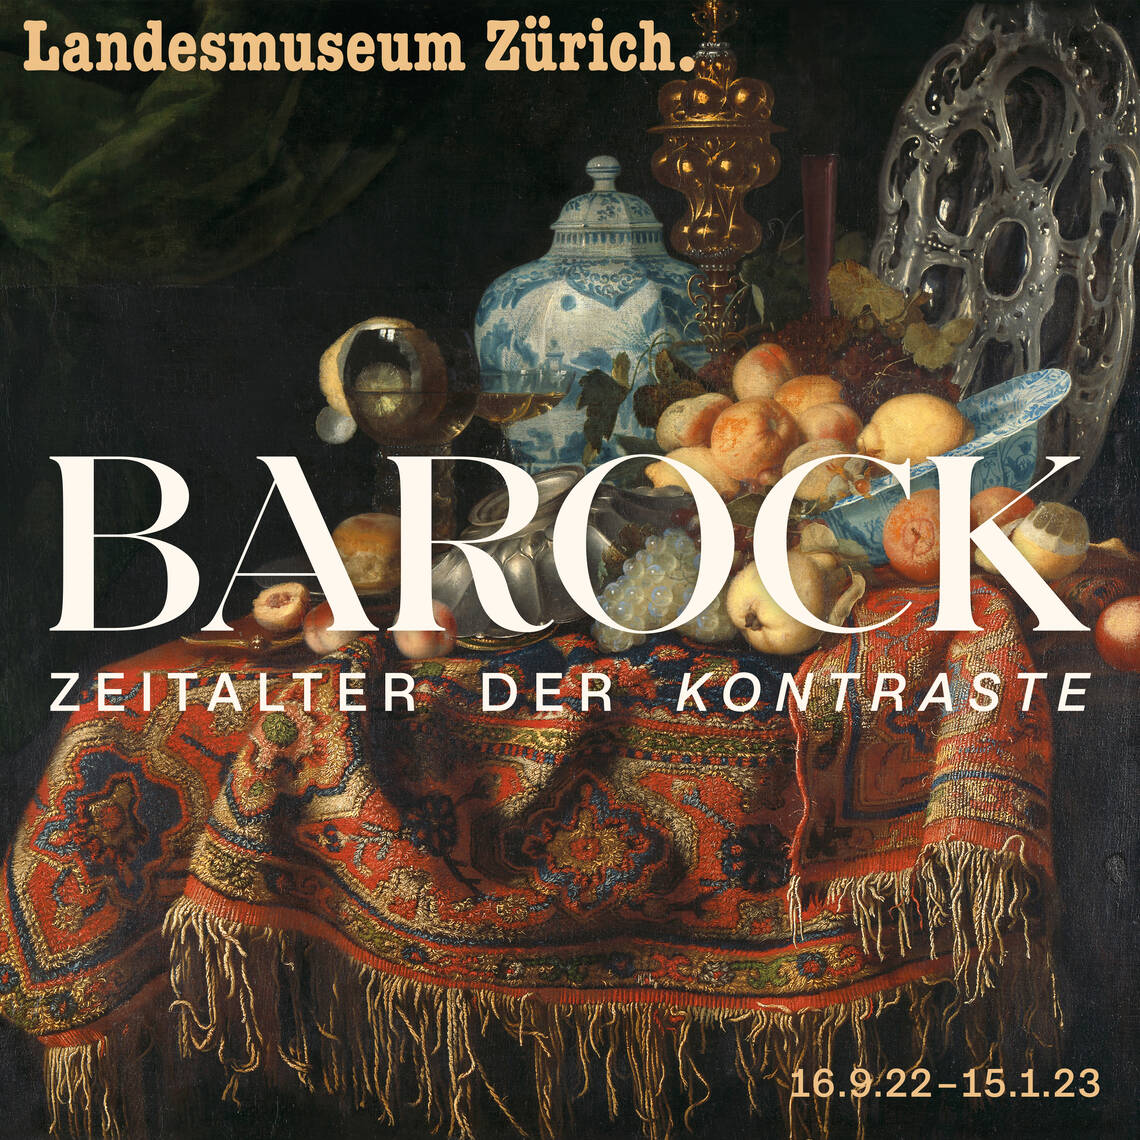 Key-Visual der Ausstellung "Barock. Zeitalter der Kontraste"